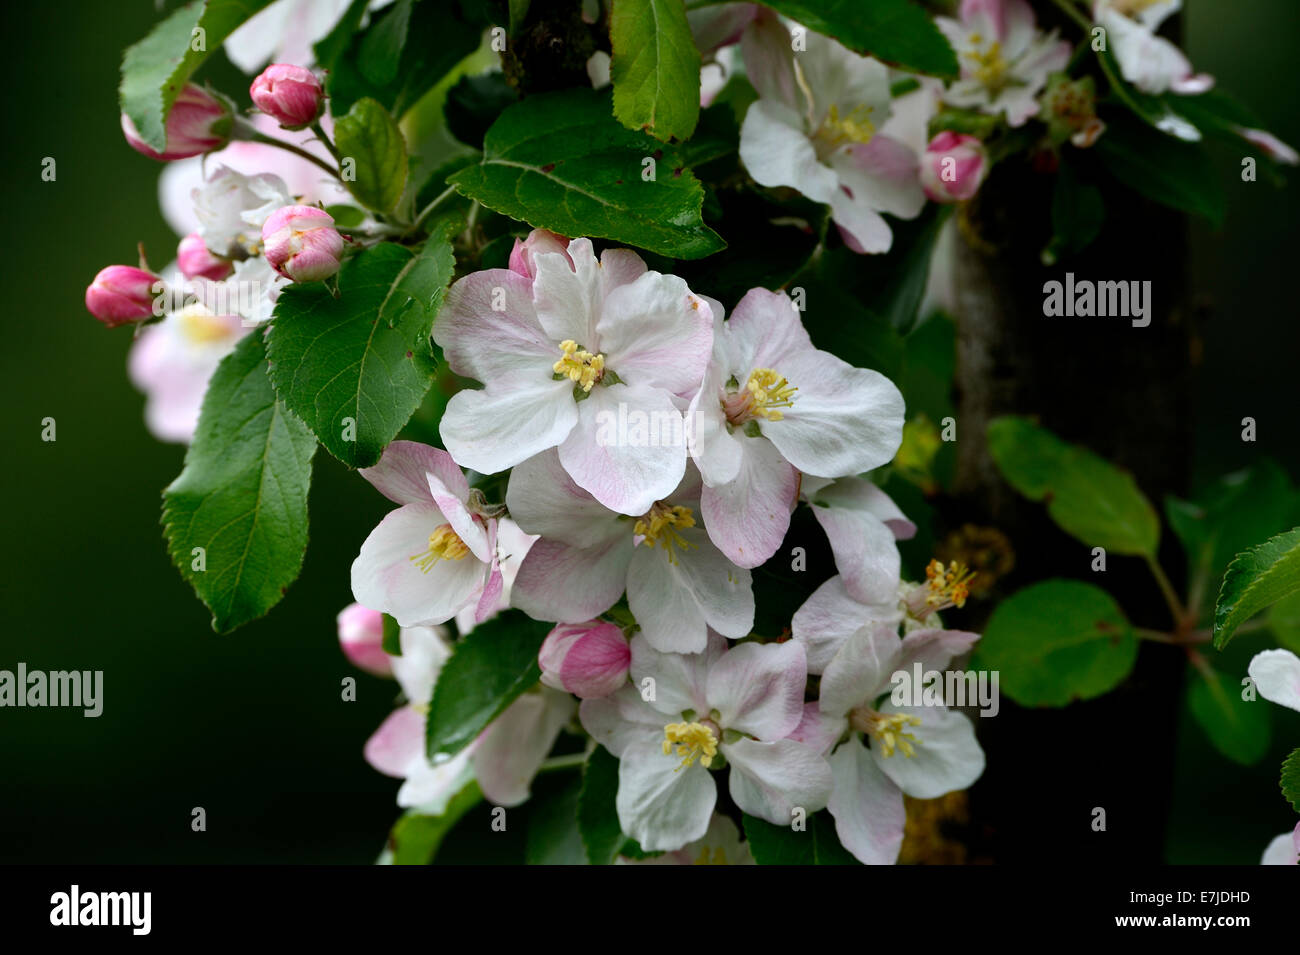 Fleurs, printemps, arbre, fleurs, fleurs d'oranger, de fruits, de graines germées, pétales, Europe, Allemagne Banque D'Images